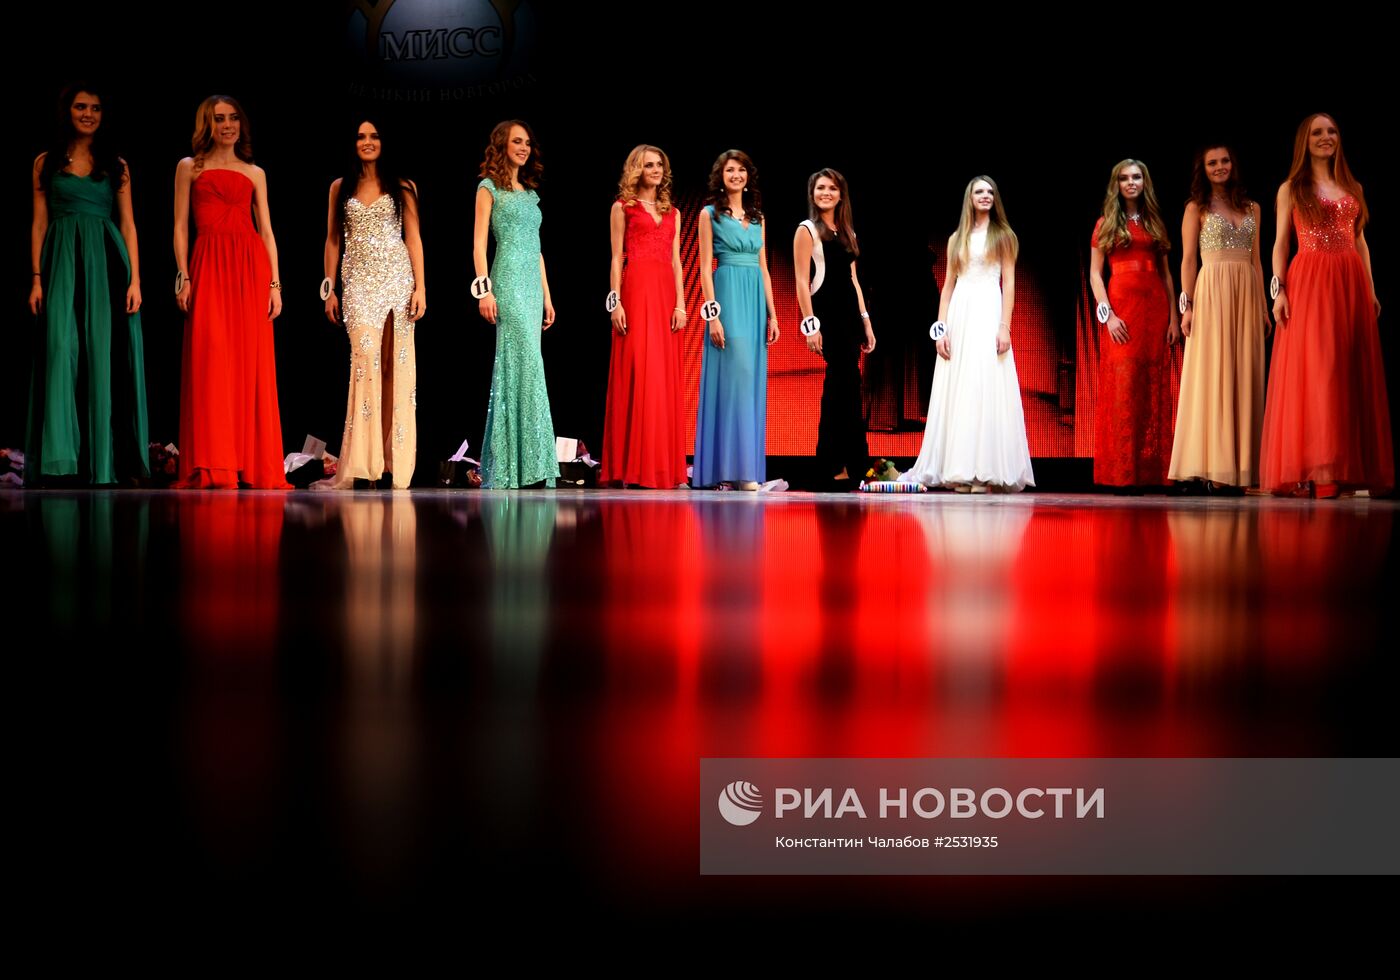 Конкурс "Мисс Великий Новгород 2015"